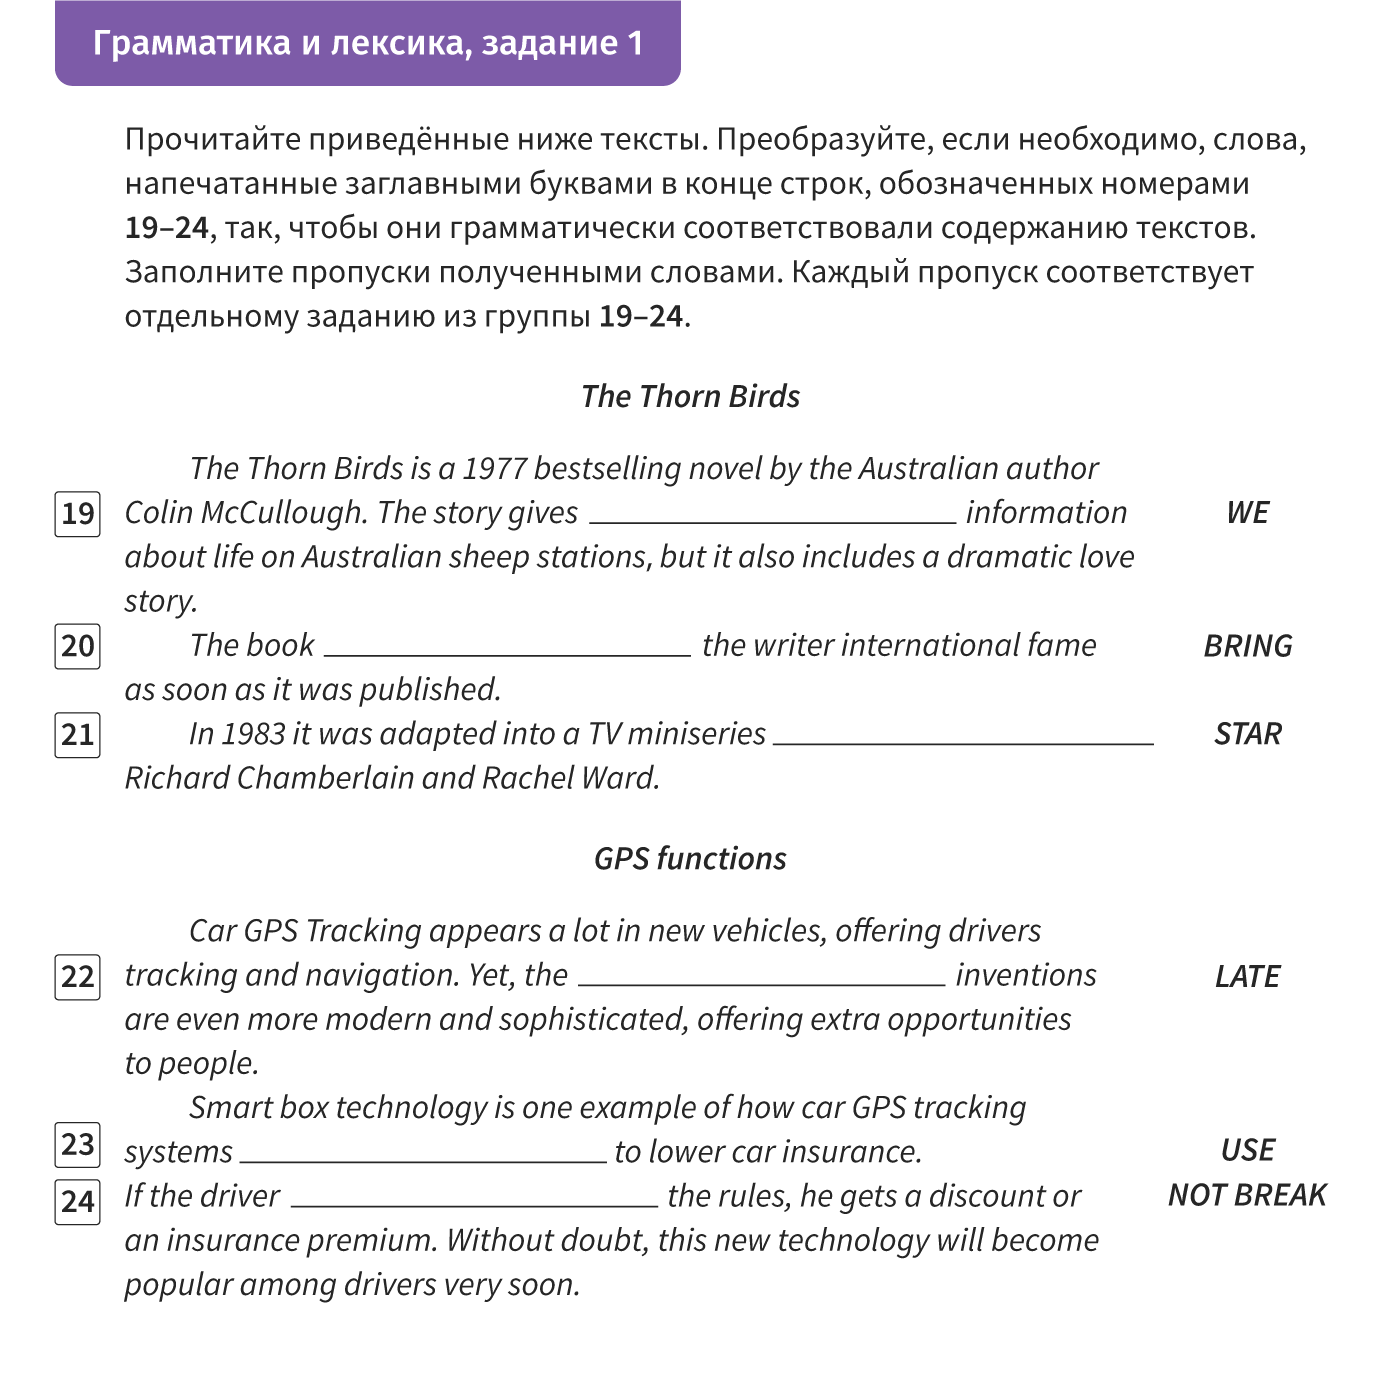 Раздел 3 задания по лексике и грамматике вариант 6 ответы. 7 класс задания лексика